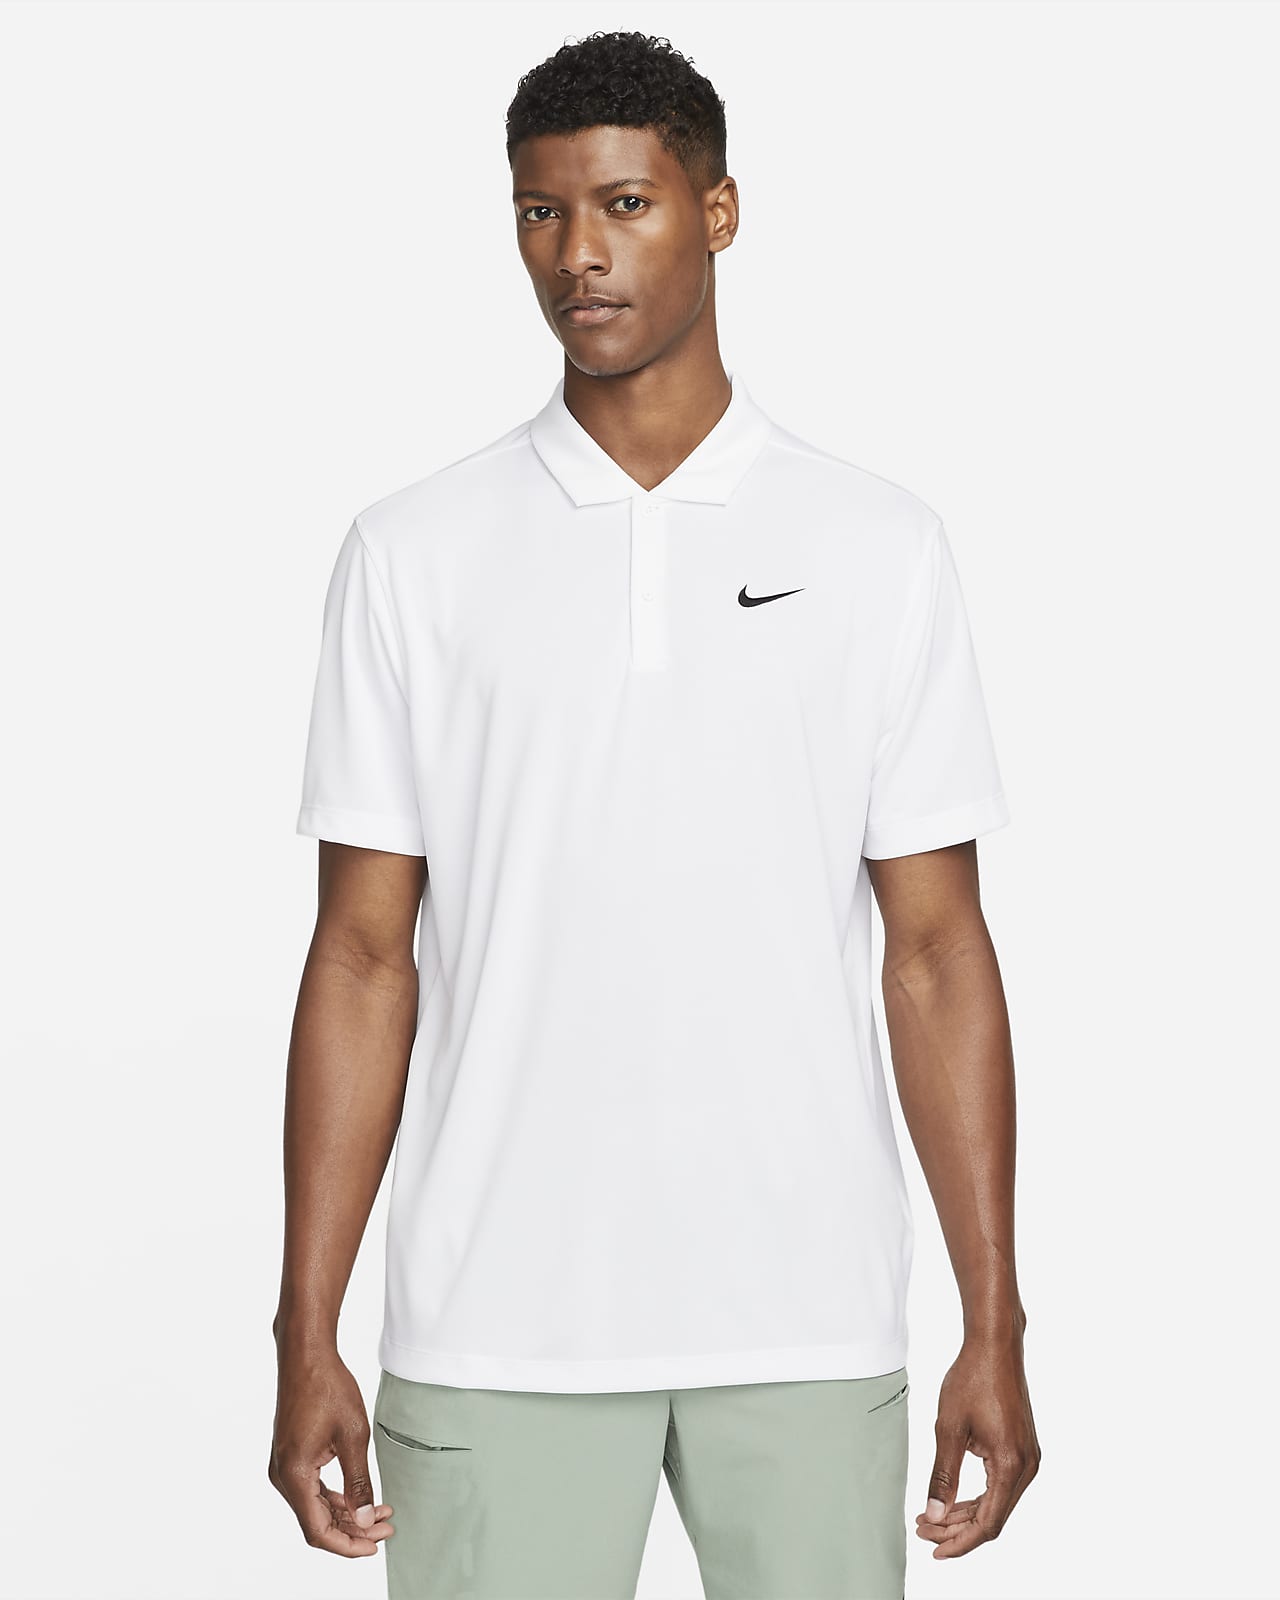 Ανδρική μπλούζα πόλο για τένις NikeCourt Dri-FIT